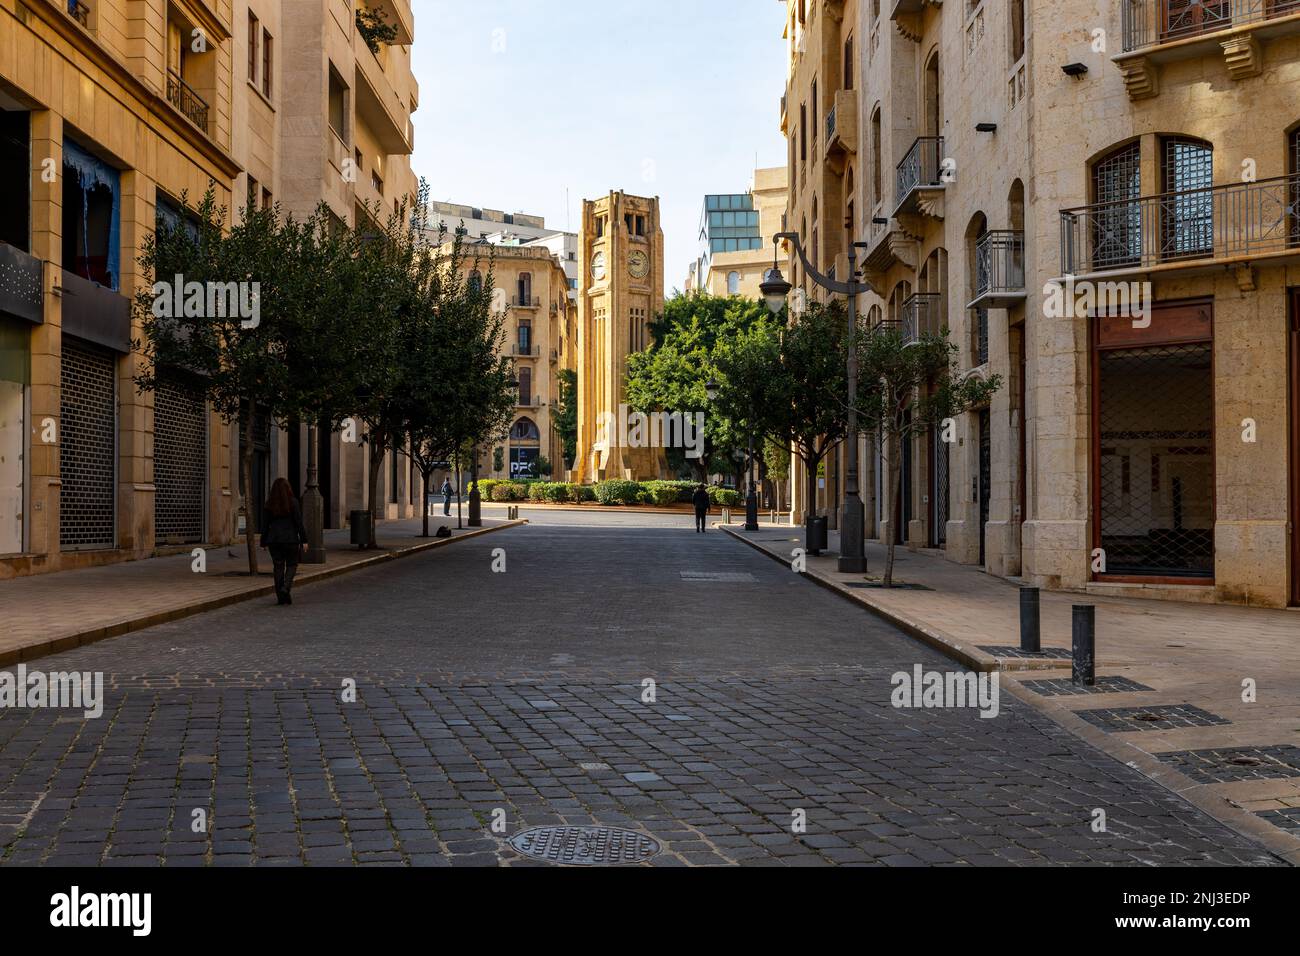 Blick auf den Nijmeh-Platz in Beirut. Traditionelle Architektur in der Altstadt von Beirut. Libanon. Stockfoto